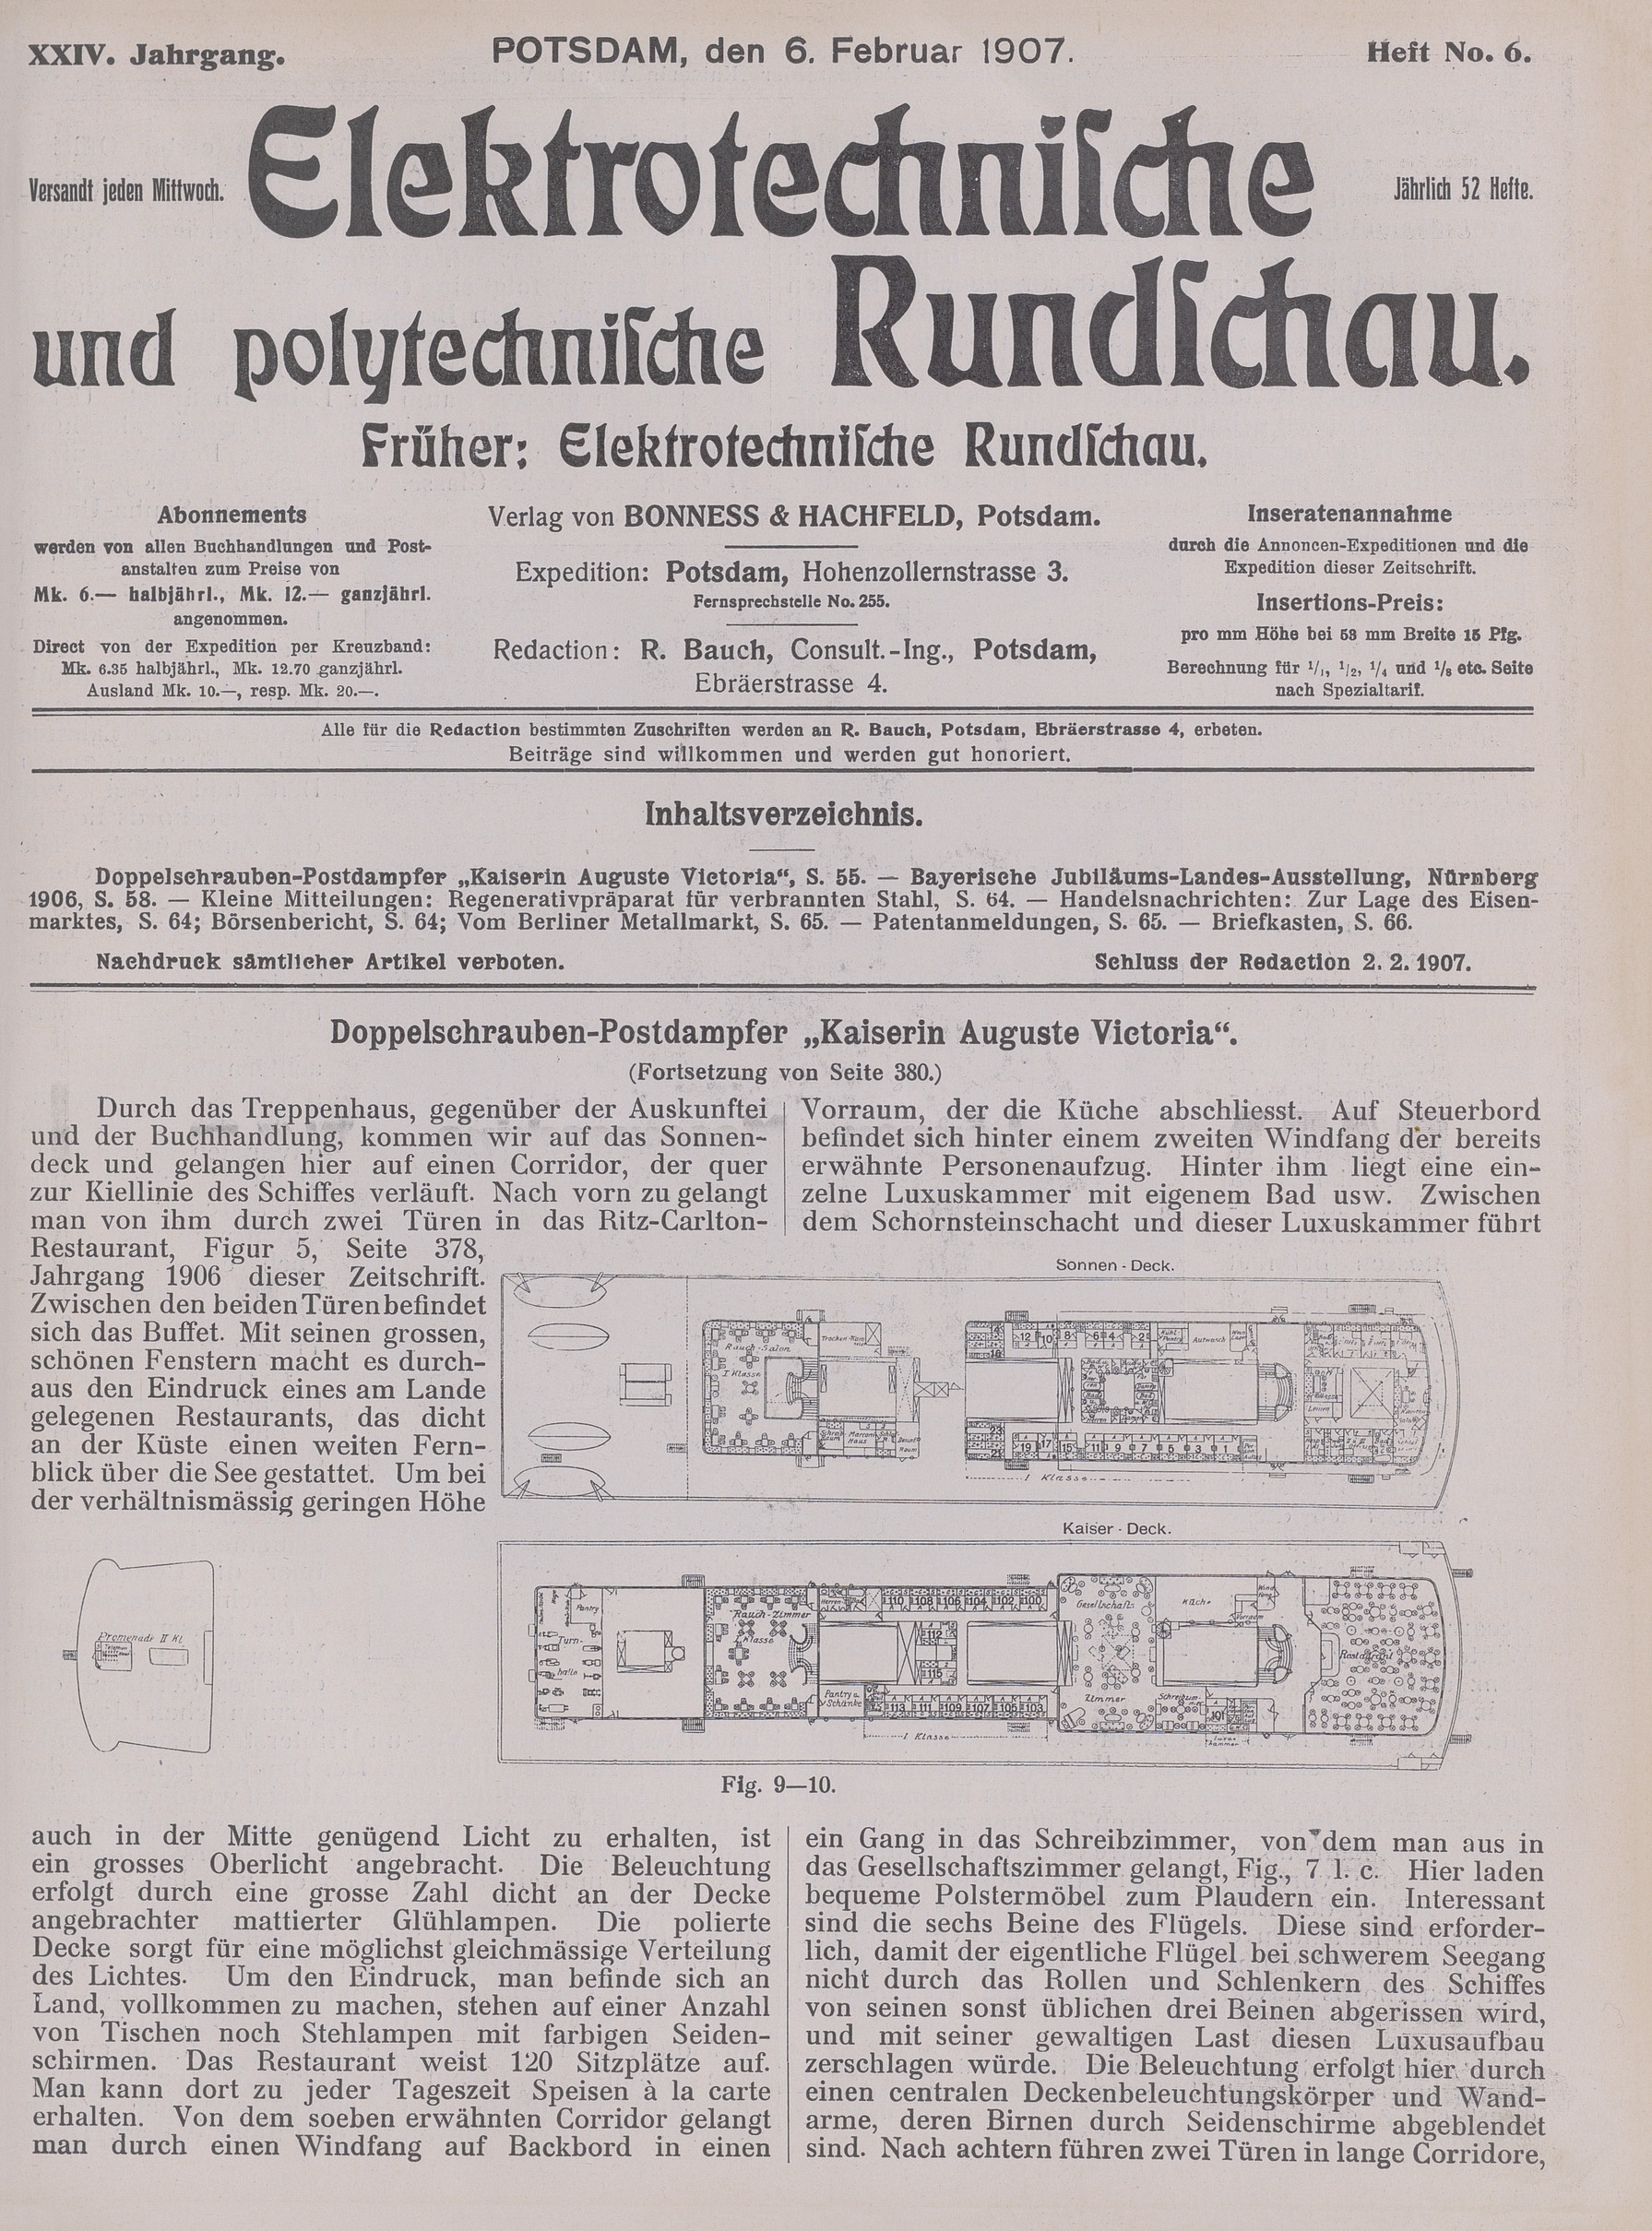 Elektrotechnische und polytechnische Rundschau, XXIV. Jahrgang, Heft No. 6